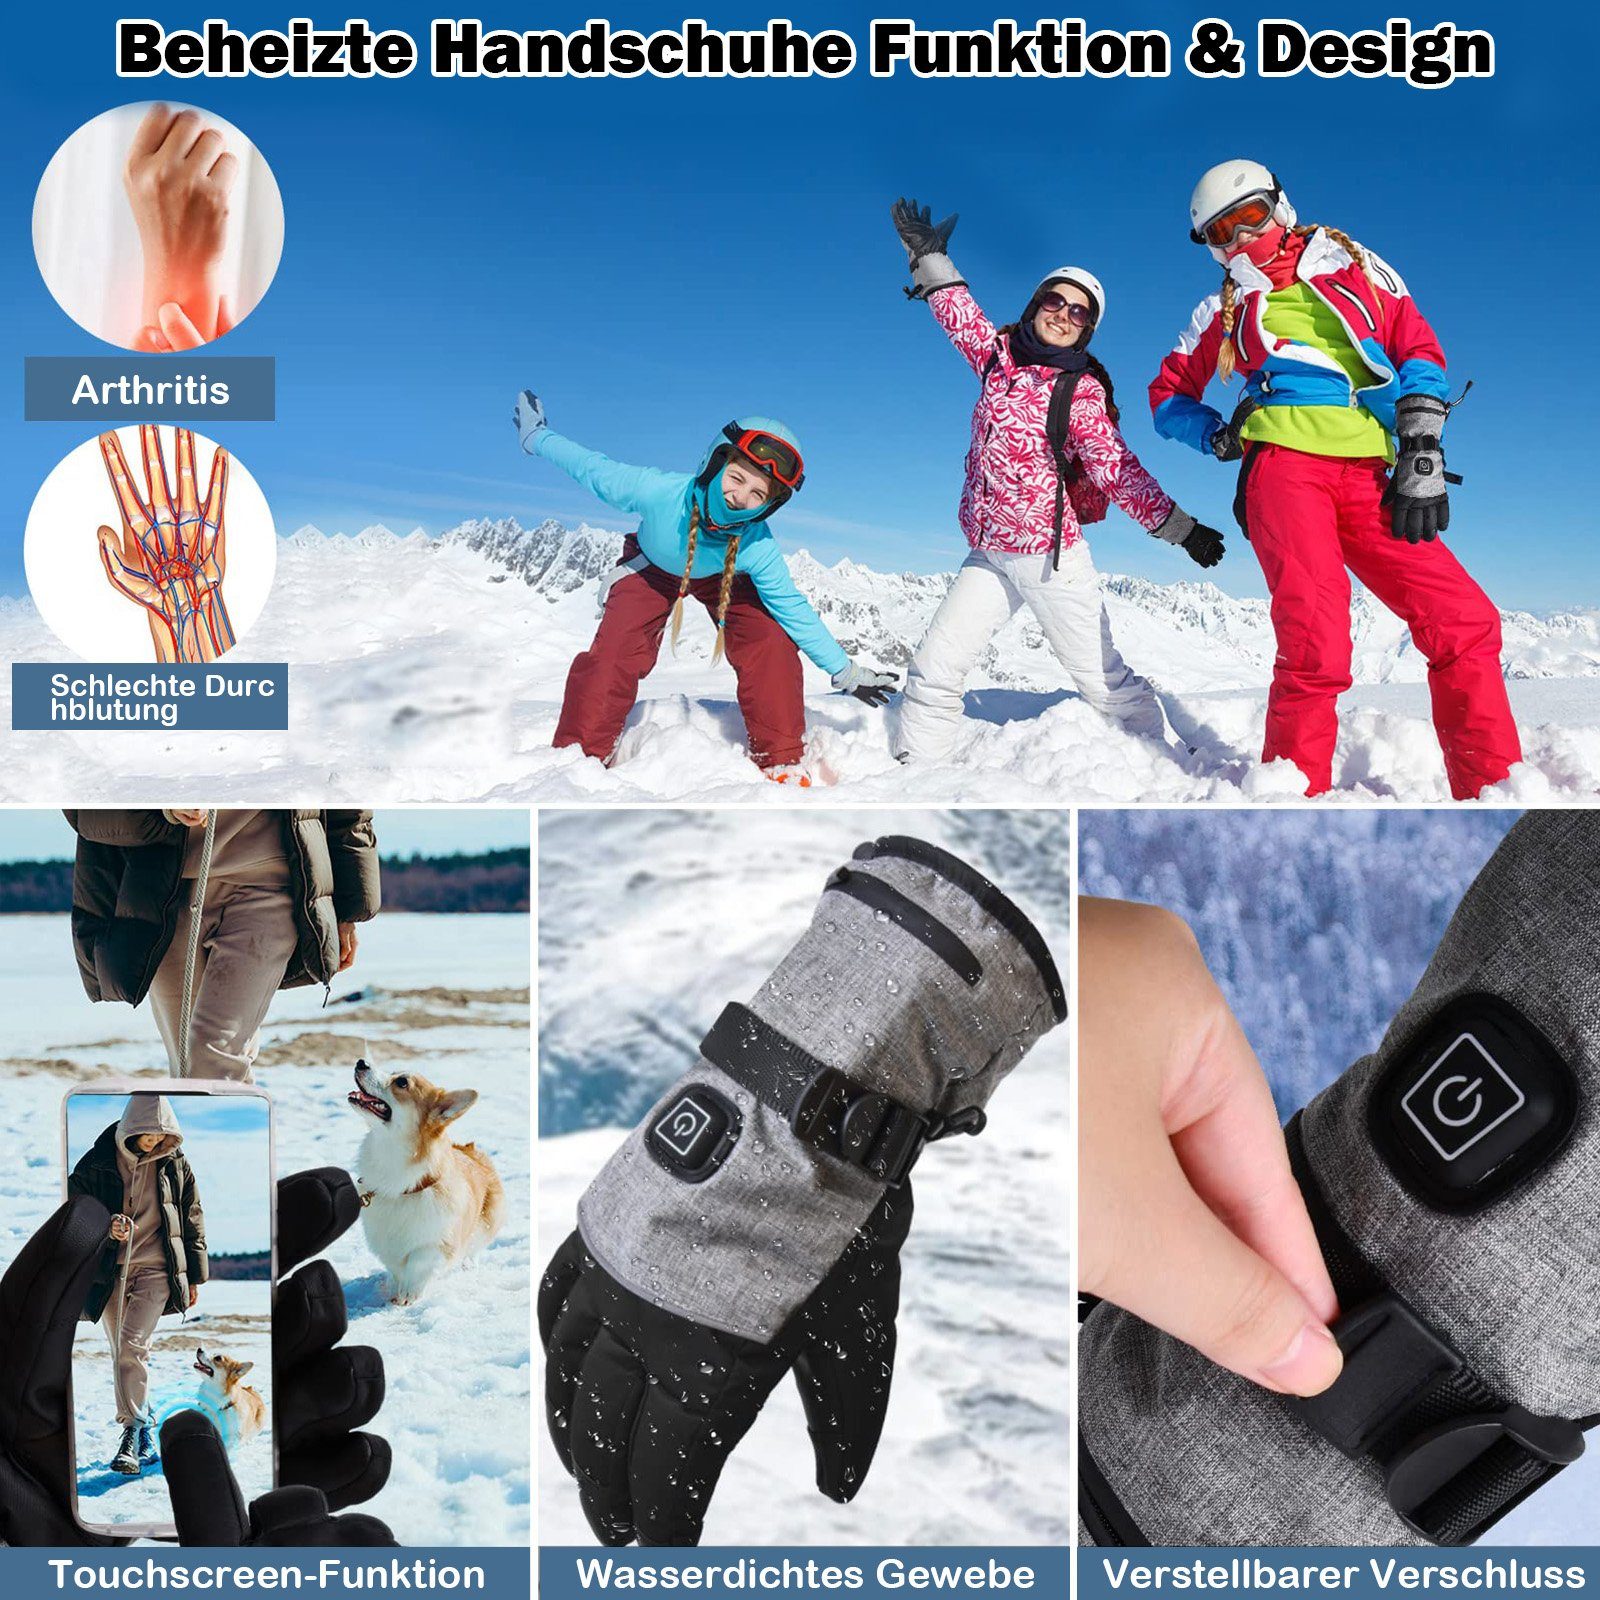 Beheizt, für 3 Klettern Rosnek Heizstufen, Batterie, Winter Männer Wandern Skifahren (1 wasserdicht, Frauen Paar) Elektriker-Handschuhe